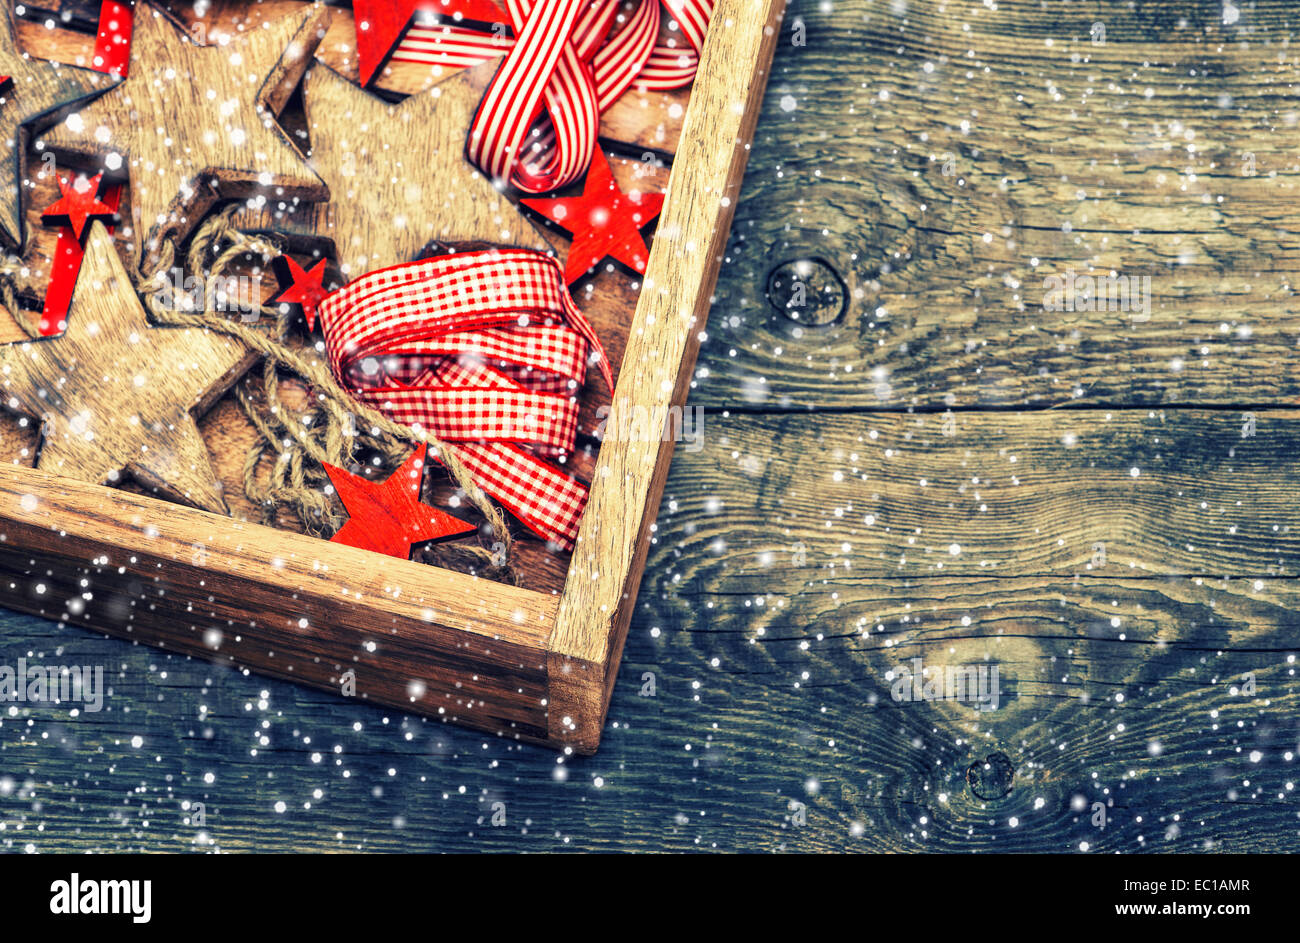 Weihnachtssterne Dekorationen aus Holz und roten Bändern auf rustikalen hölzernen Hintergrund. Vintage-Stil getönten Bild mit fallenden Schnee ef Stockfoto